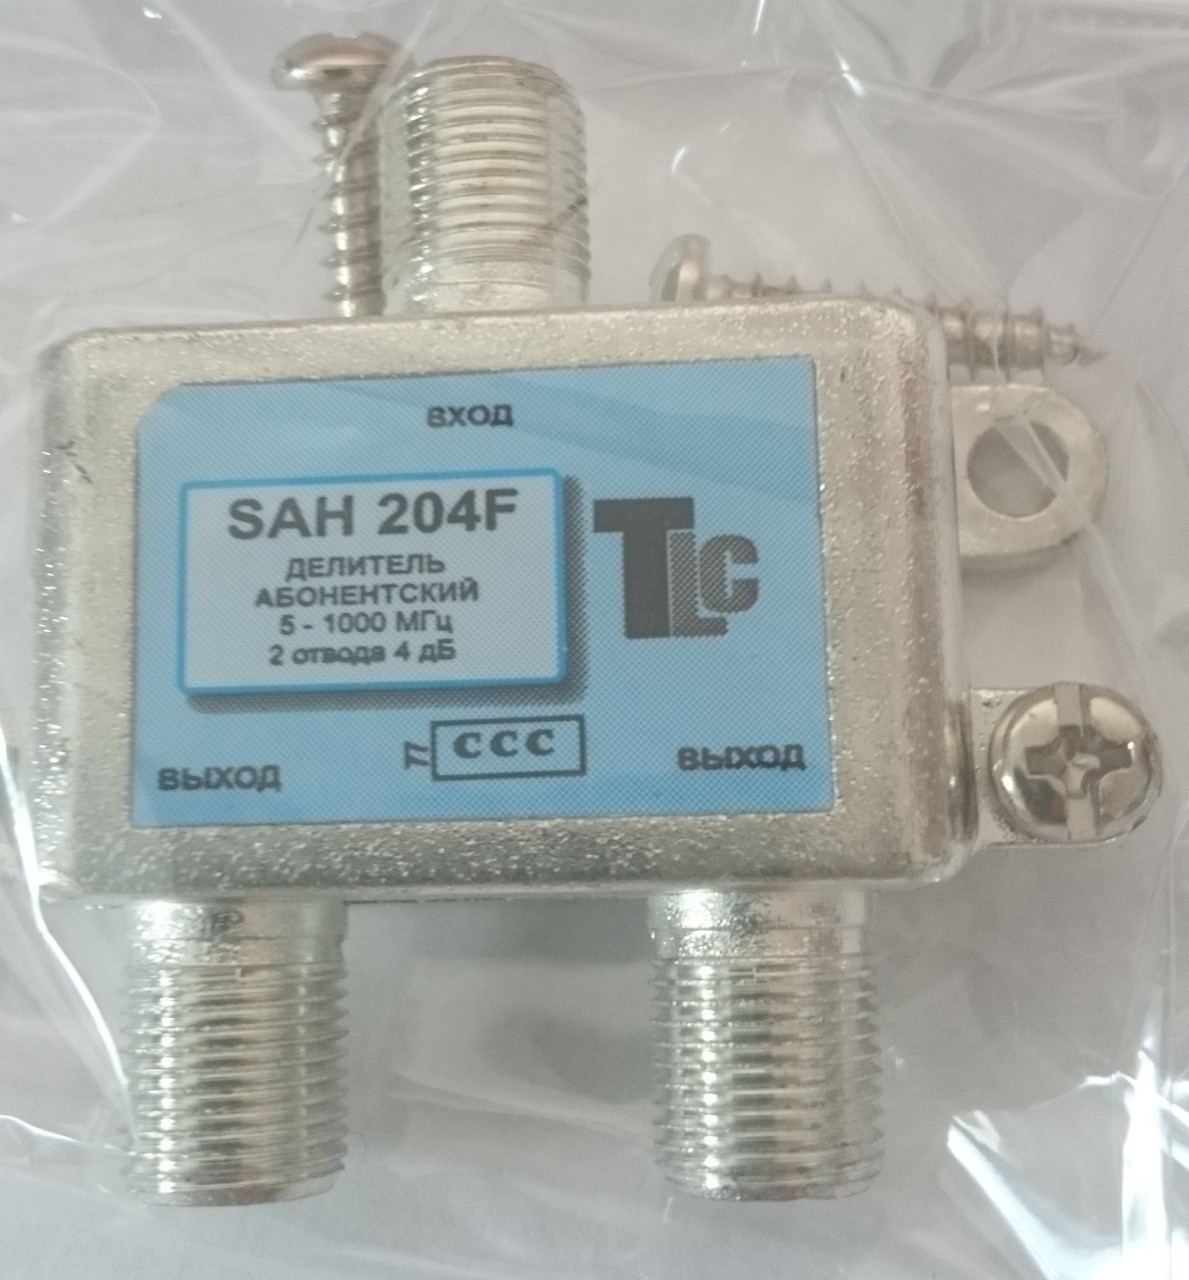 Сплиттер SAH-204  2 отвода  5-1000 MHz